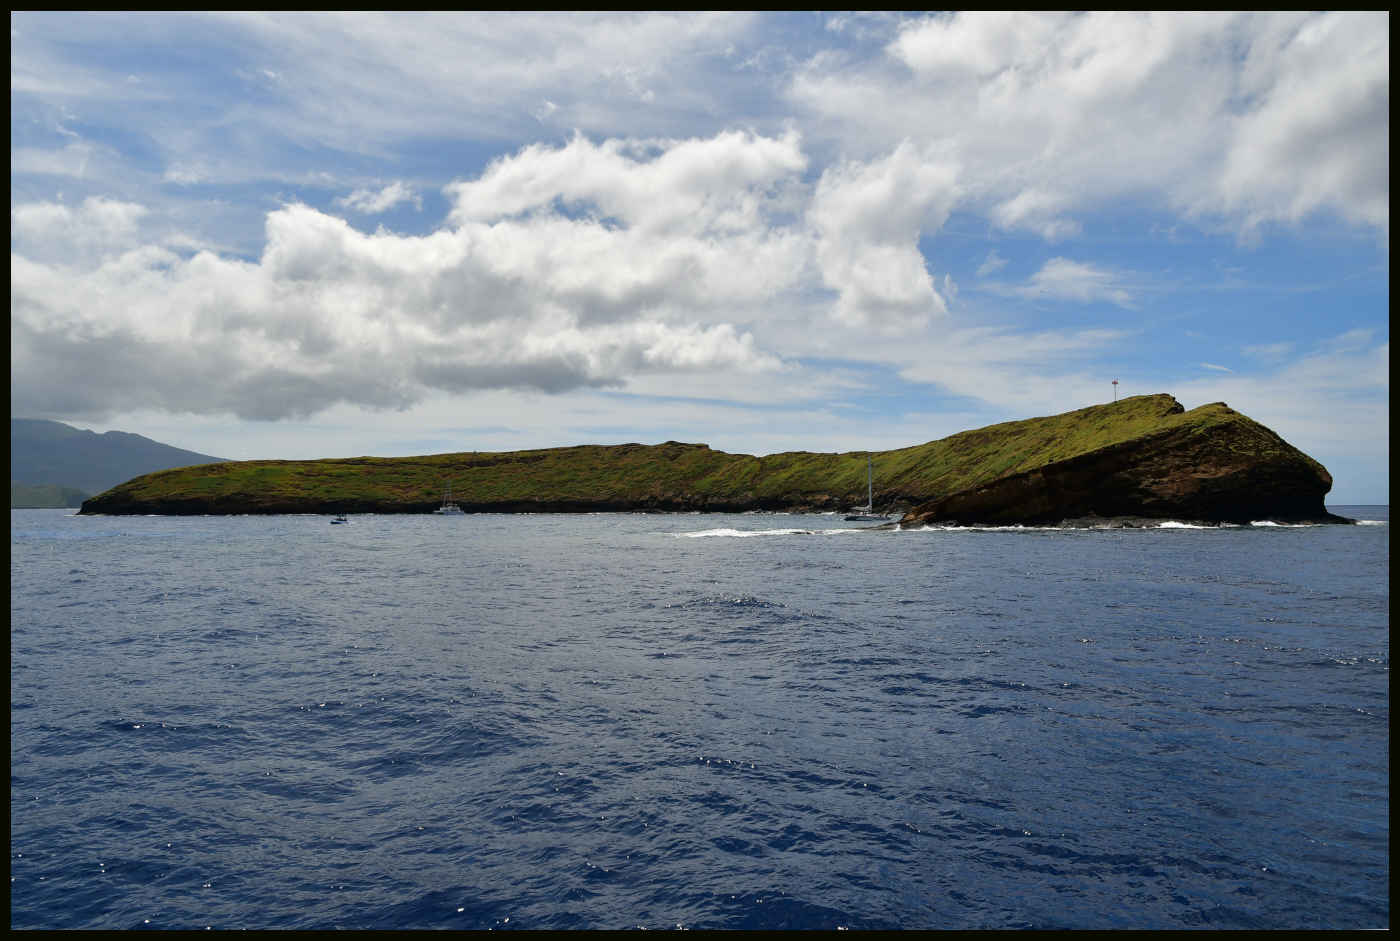 Molokini Island